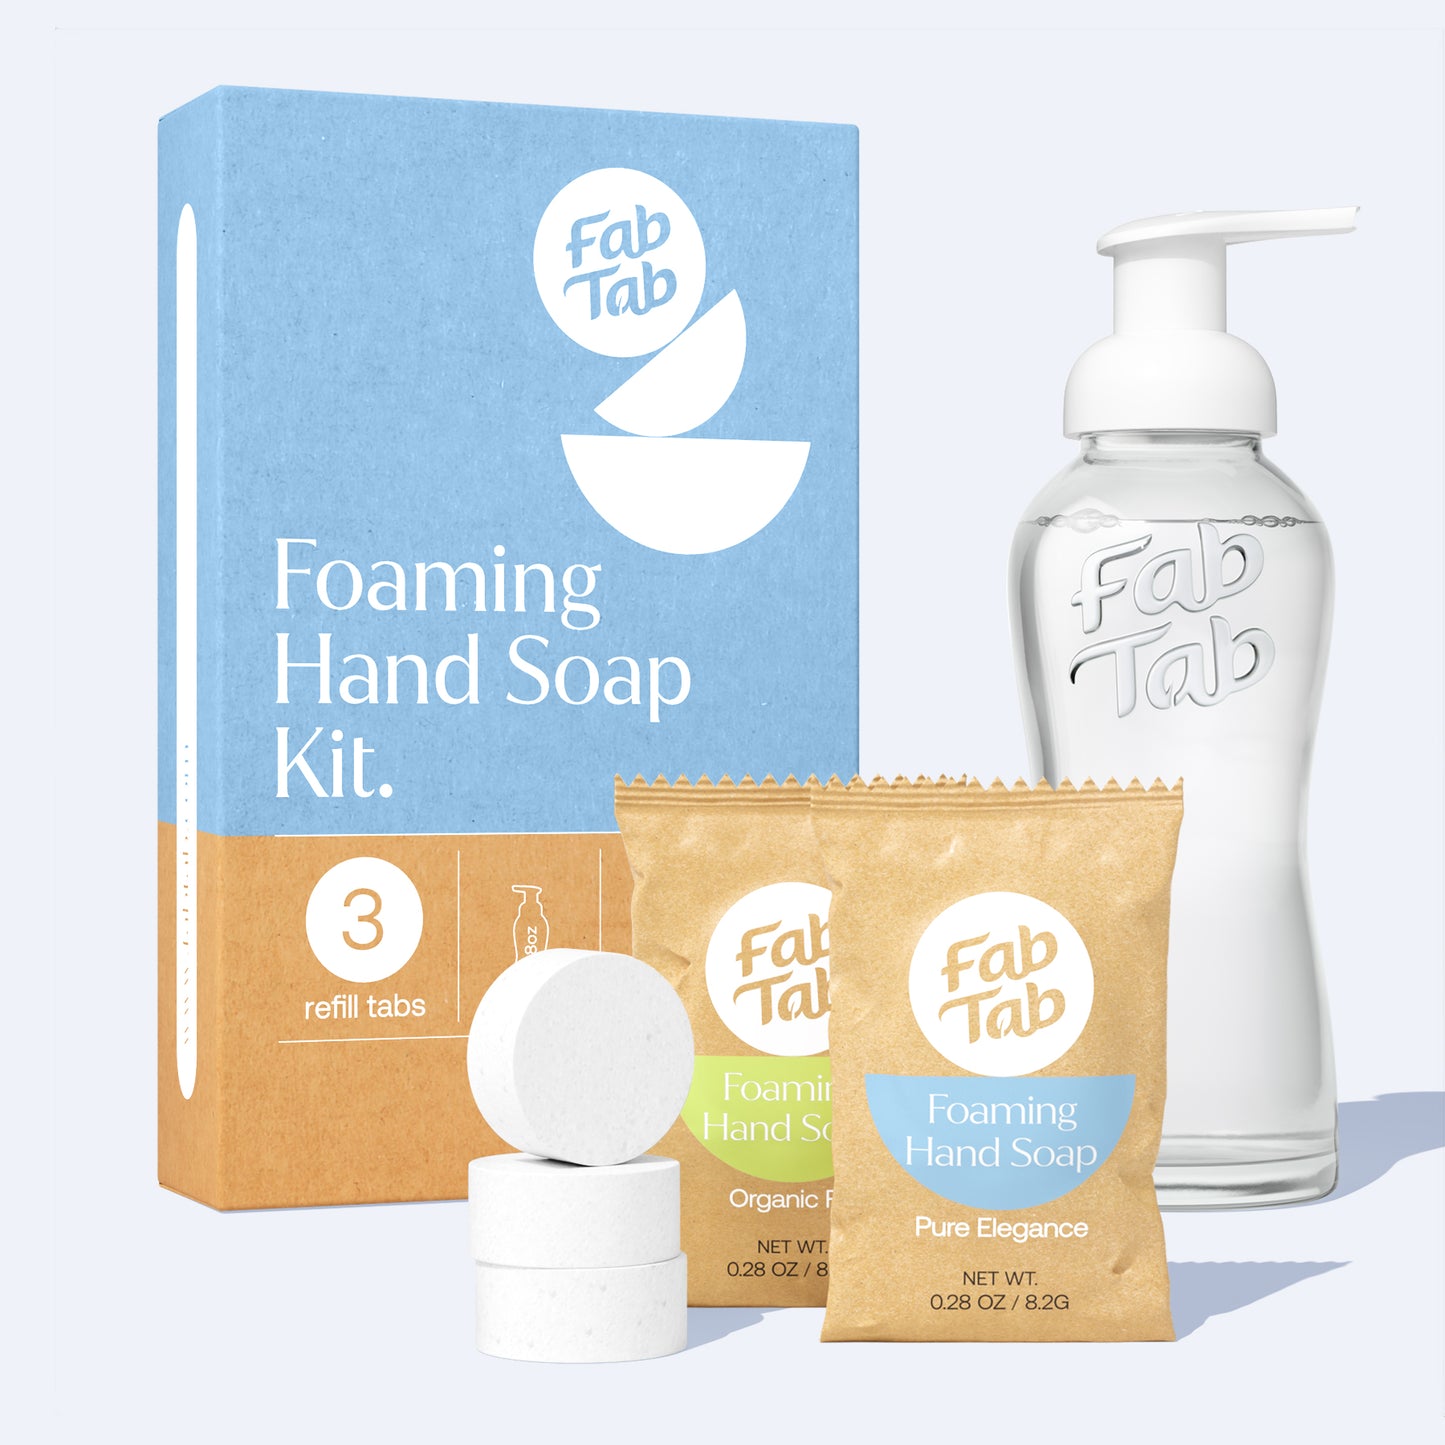 Foaming Hand Soap Kit